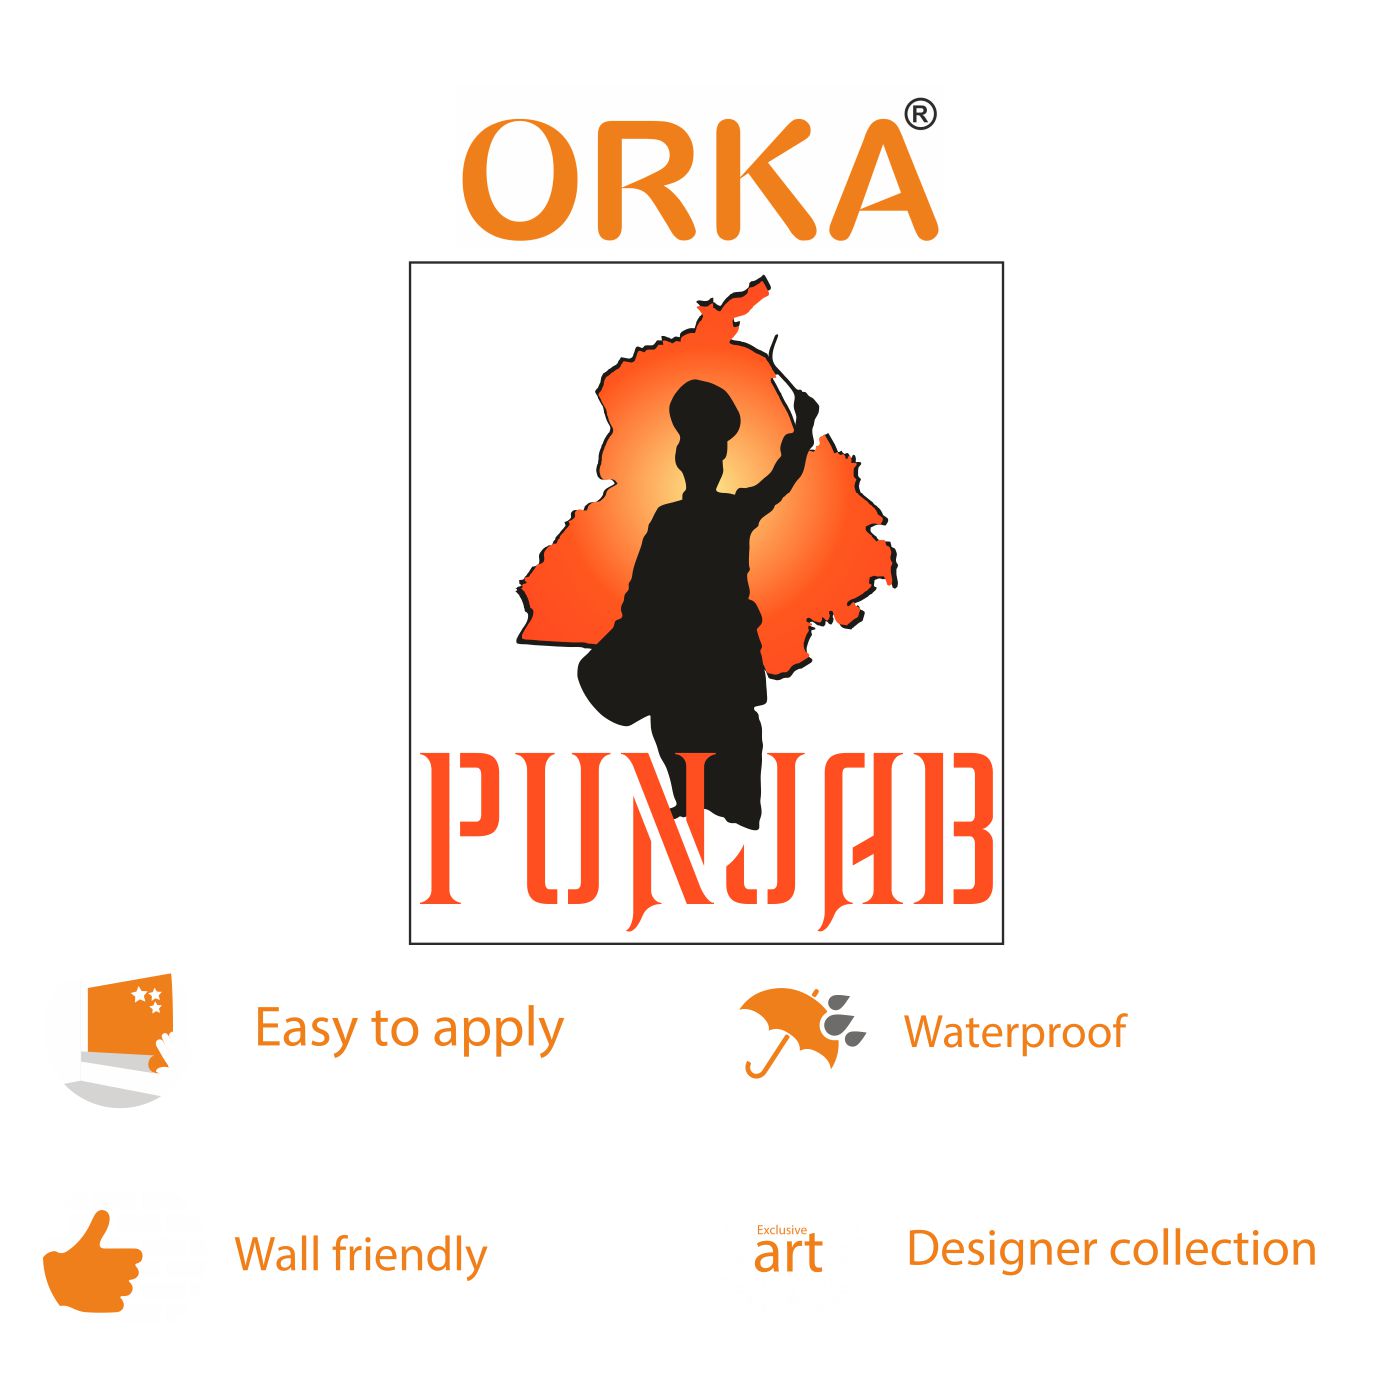 ORKA Punjabi Theme Wall Sticker  2   XL 